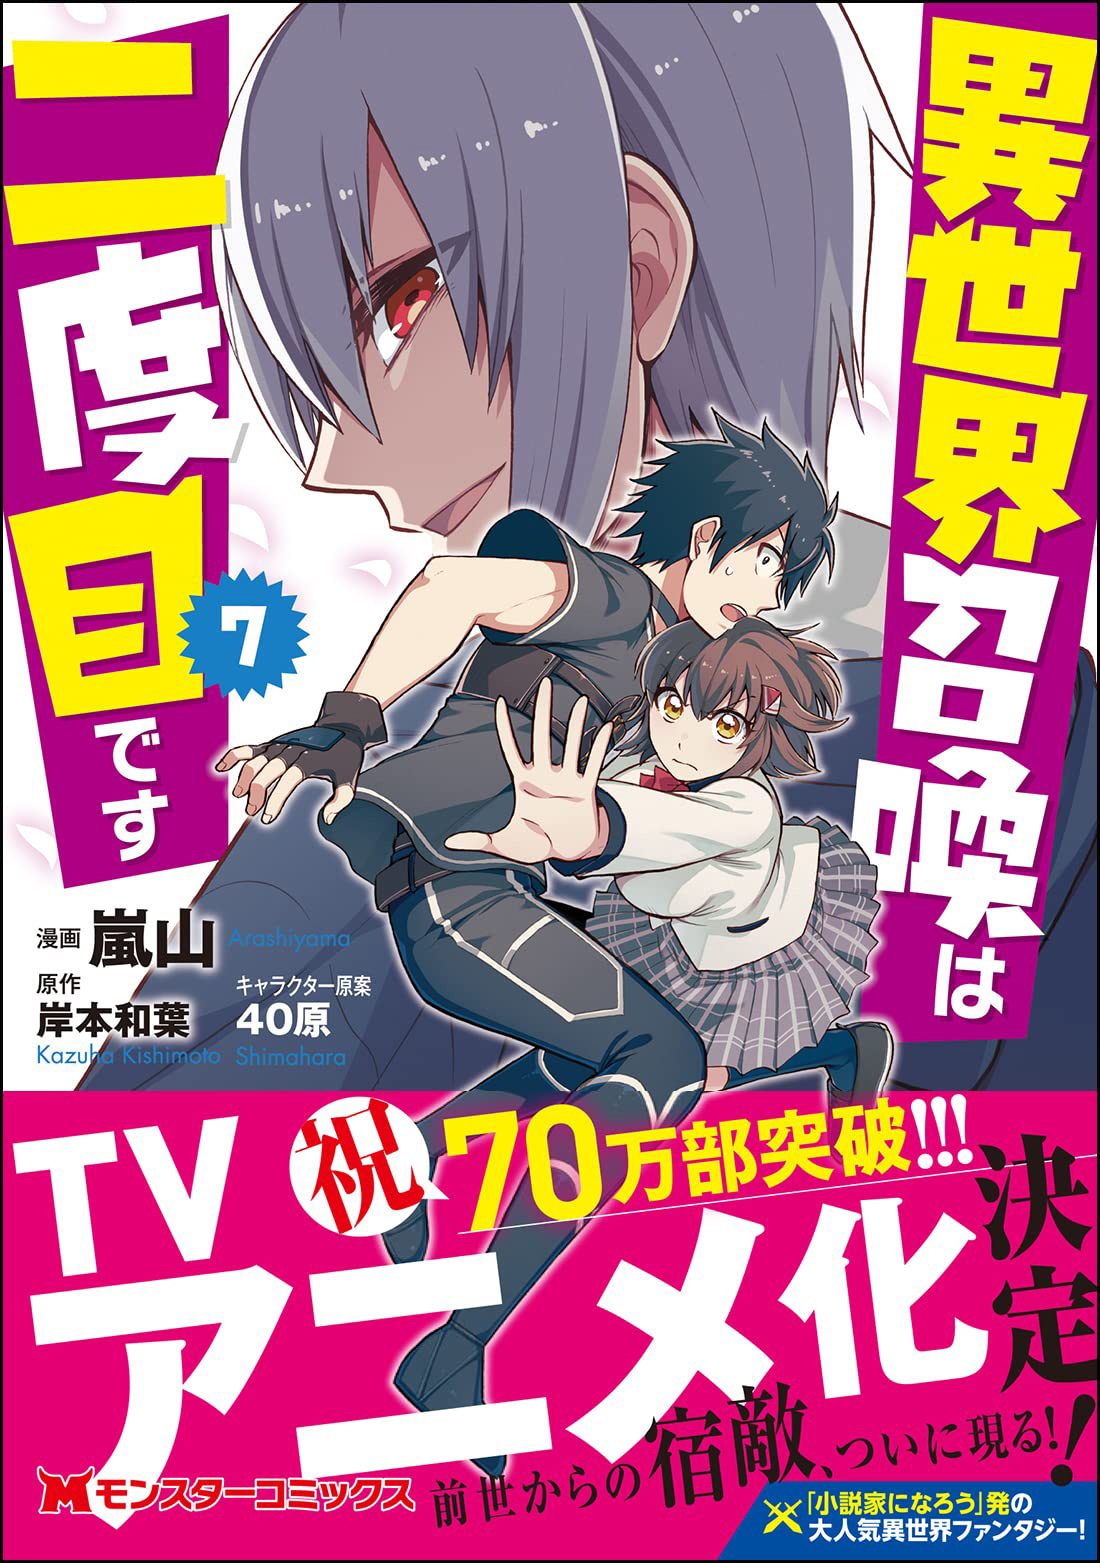 Anúncio de anime foi dado por meio de divulgação da capa do volume 7 do mangá.